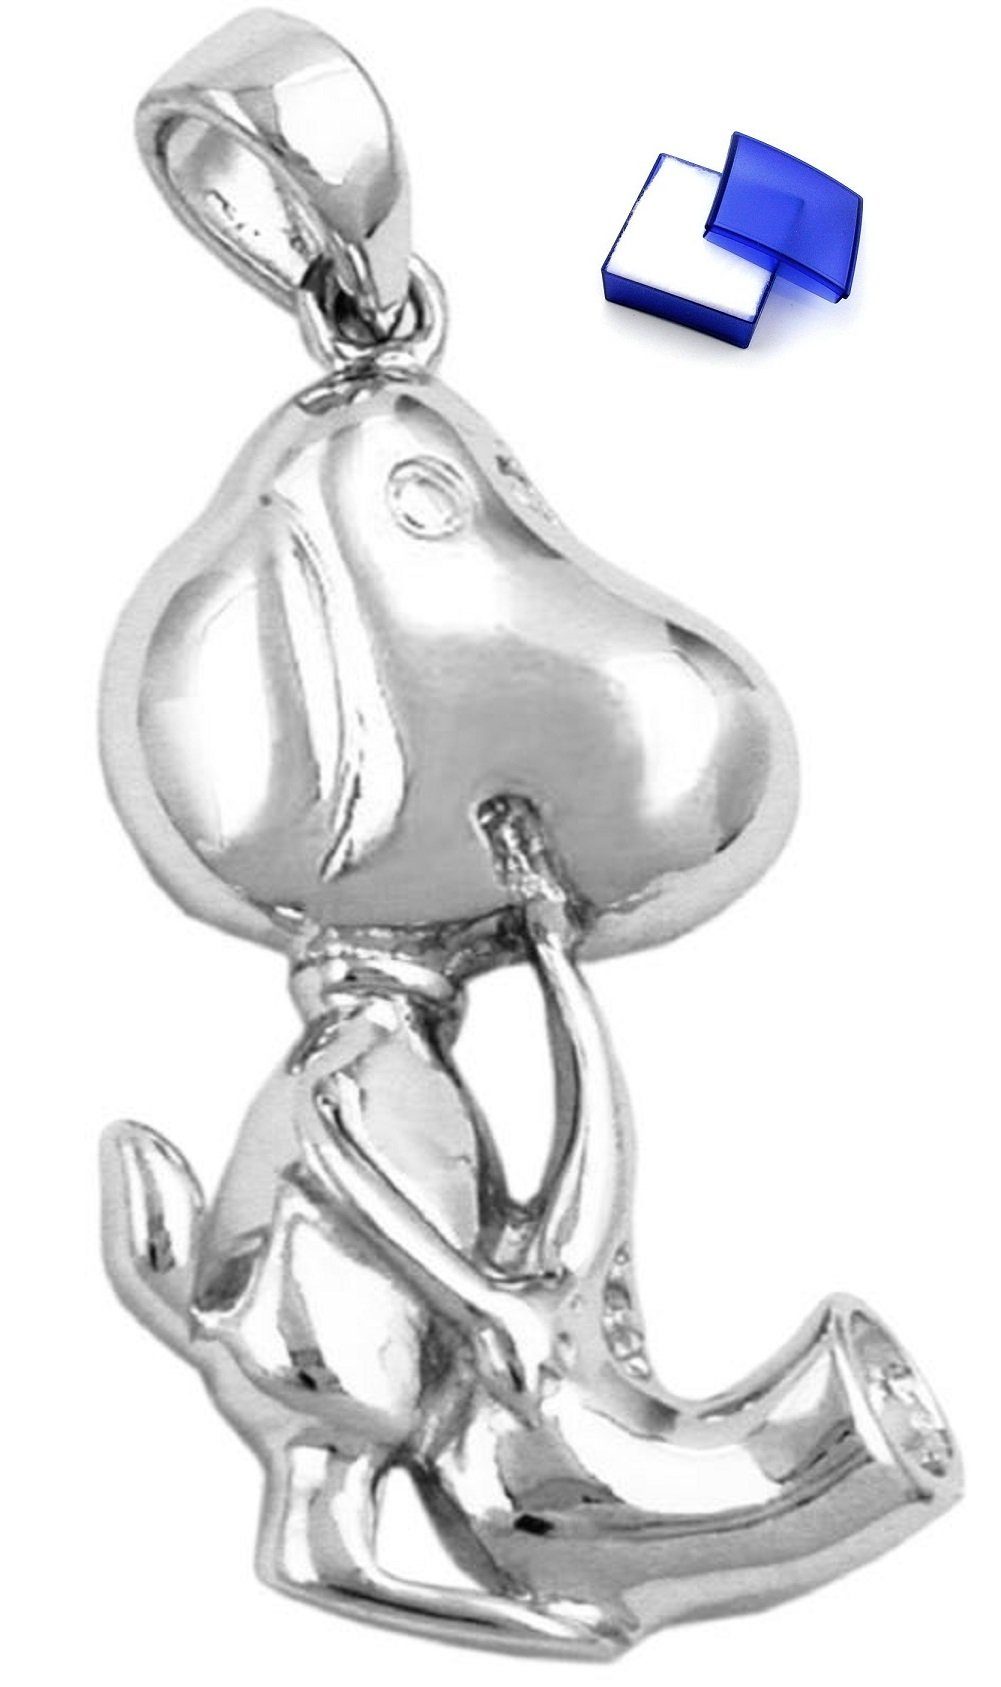 unbespielt Kettenanhänger Kettenanhänger Anhänger Hund mit Saxophon 925 Silber 29 x 18 mm inkl. kleiner Schmuckbox, Silberschmuck für Damen und Herren